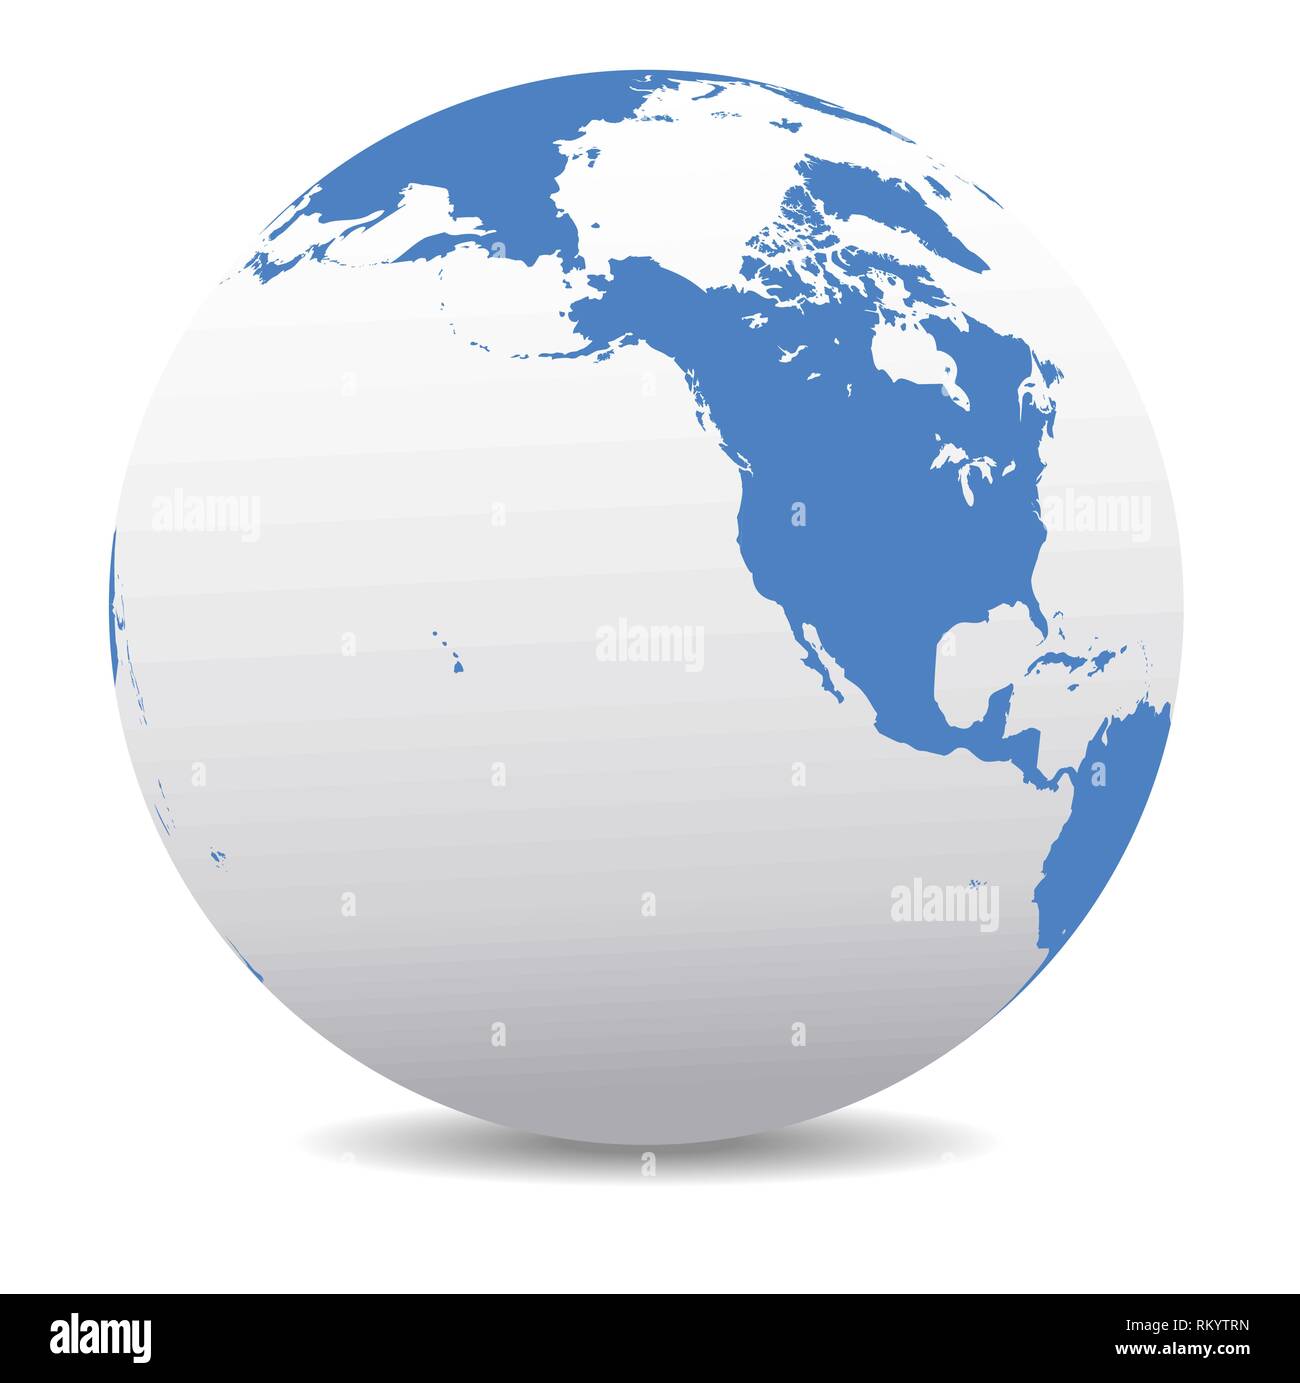 América del Norte, Canadá, Siberia y Hawai Mundo Global, mapa de vectores icono del globo terráqueo, la costa oeste de América Ilustración del Vector